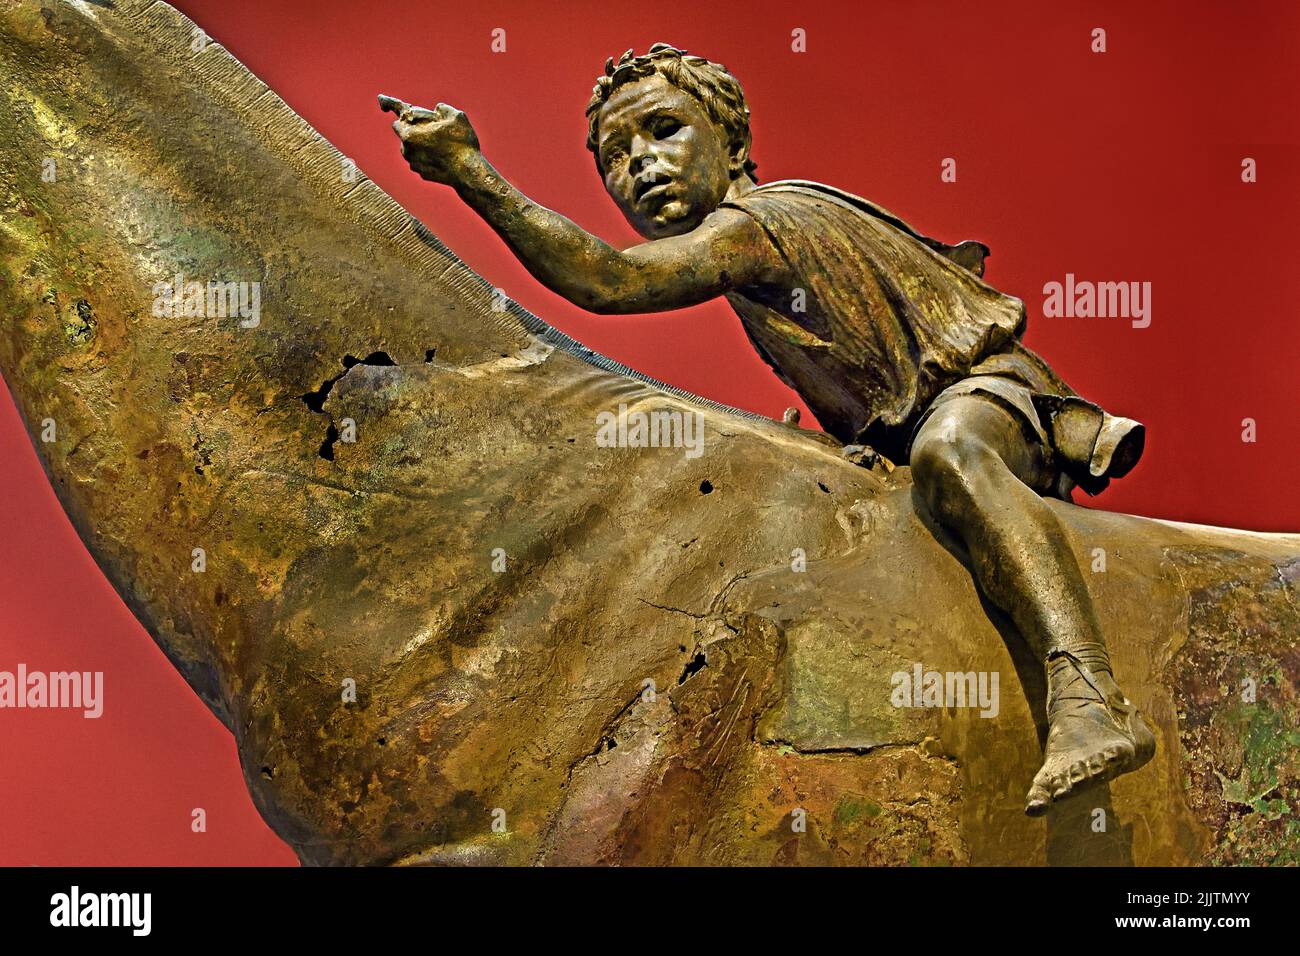 Der Jockey der Artemision große hellenistische Bronzestatue, ein Junge, der auf einem Pferd reitet, datiert auf etwa 150–140 v. Chr., Bronzestatue aus dem antiken Griechenland, griechische Skulptur eines Rennpferdes, vor der Zerstörung gerettet, als es in der Antike bei einem Schiffbruch verloren ging, entdeckt im zwanzigsten Jahrhundert, den Göttern gewidmet. Nationales Archäologisches Museum in Athen. Stockfoto